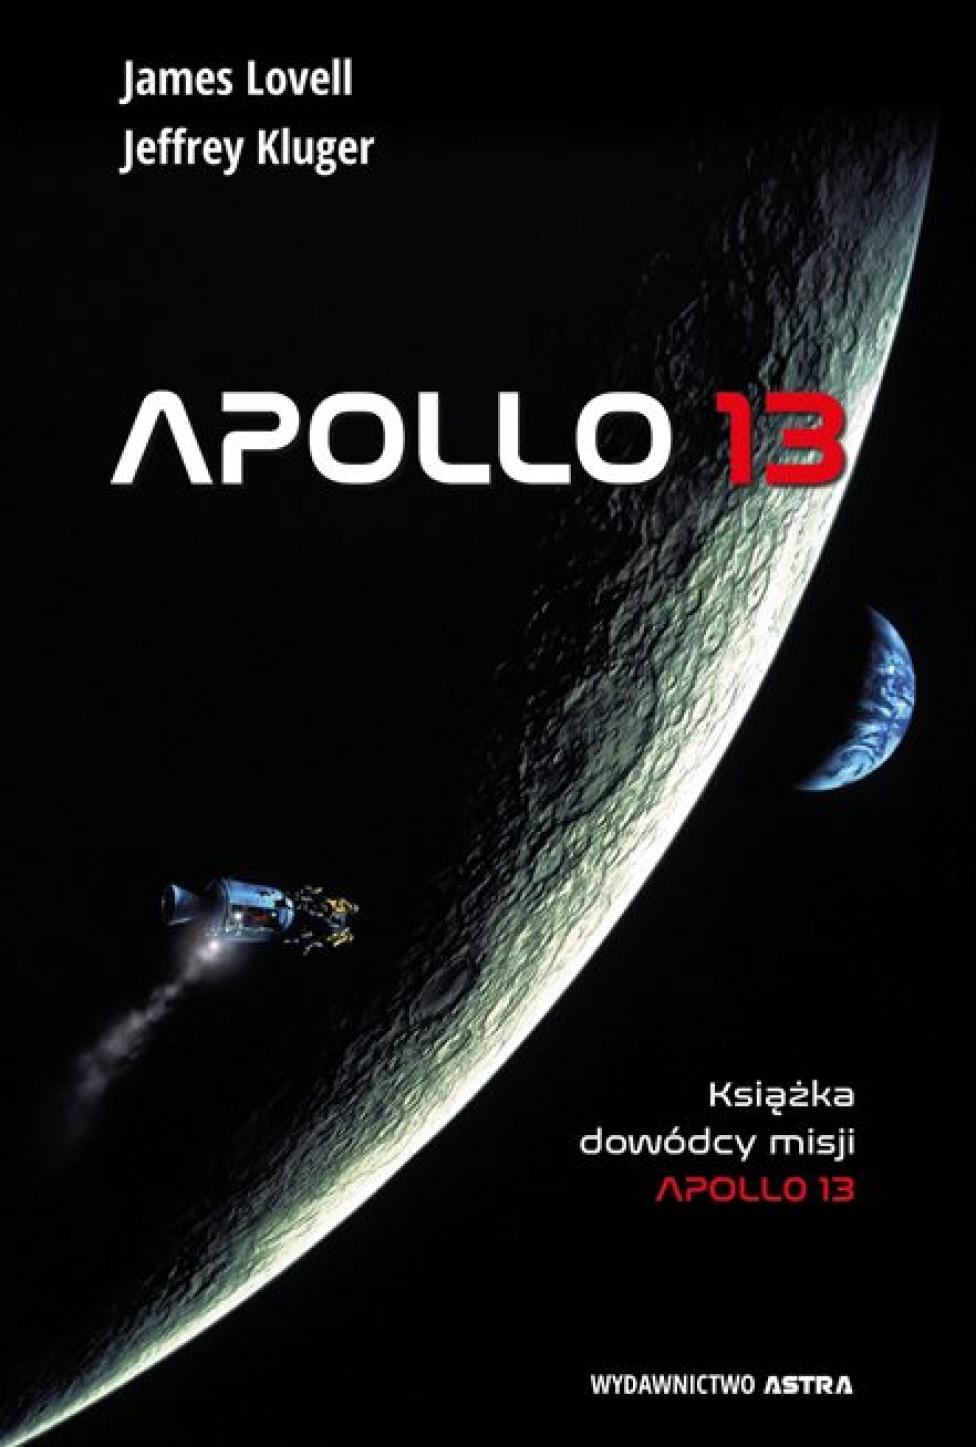 Książka "Apollo 13" (fot. Wydawnictwo Astra)